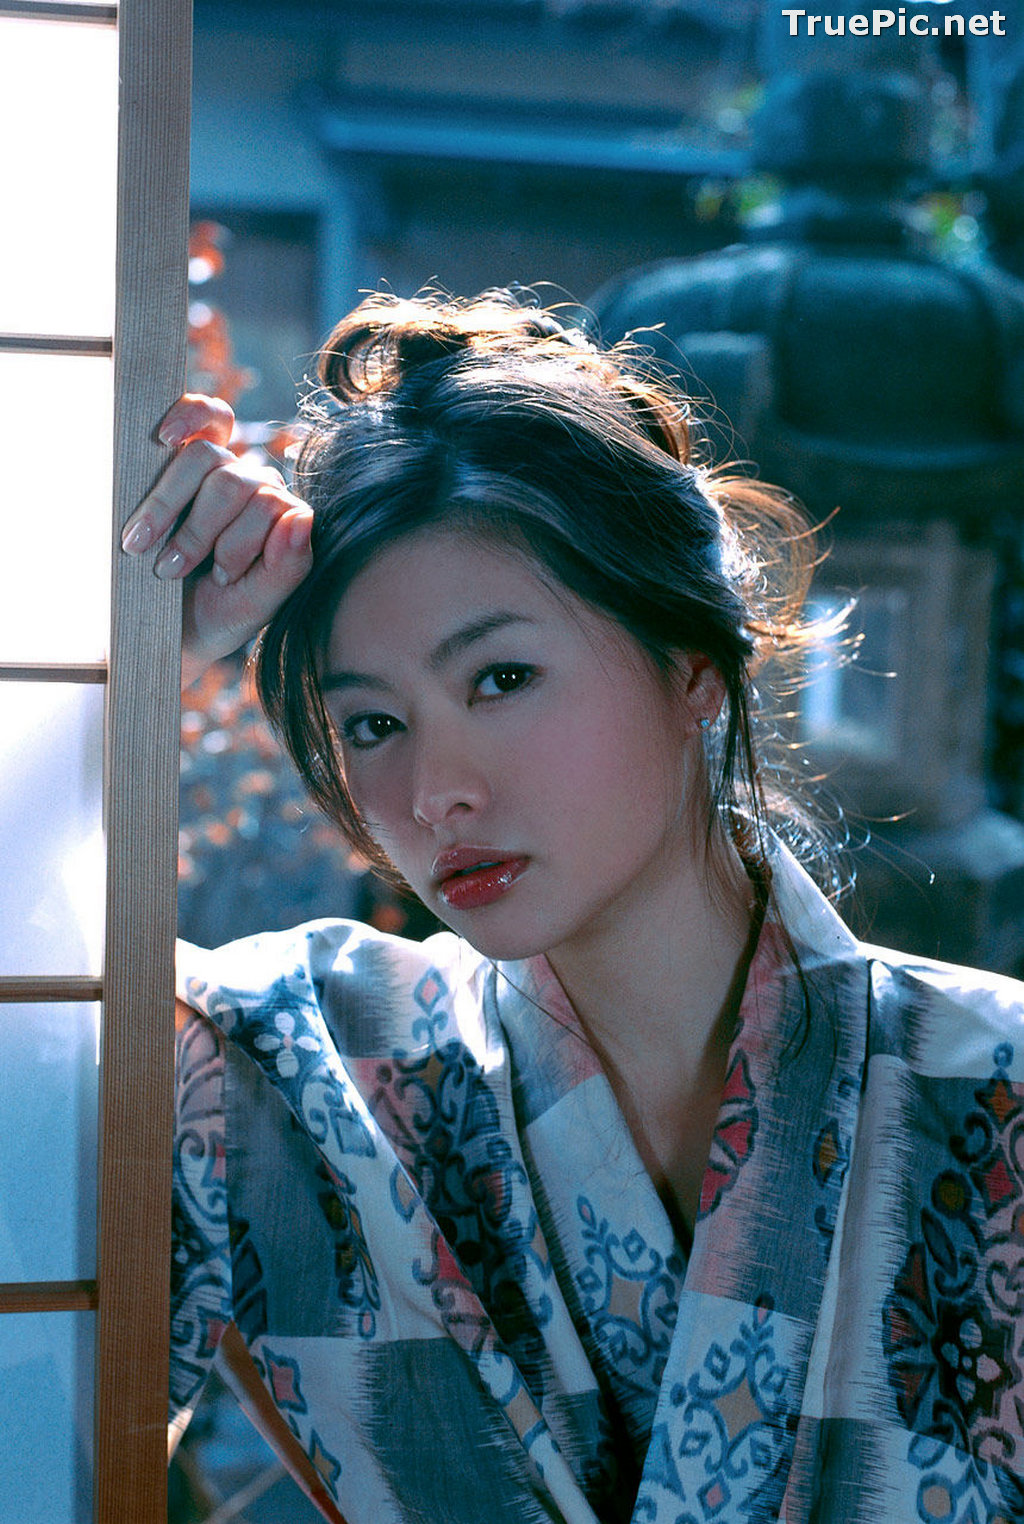 Image Japanese Actress and Model - Sayaka Yoshino - Saya Photo Album - TruePic.net - Picture-21